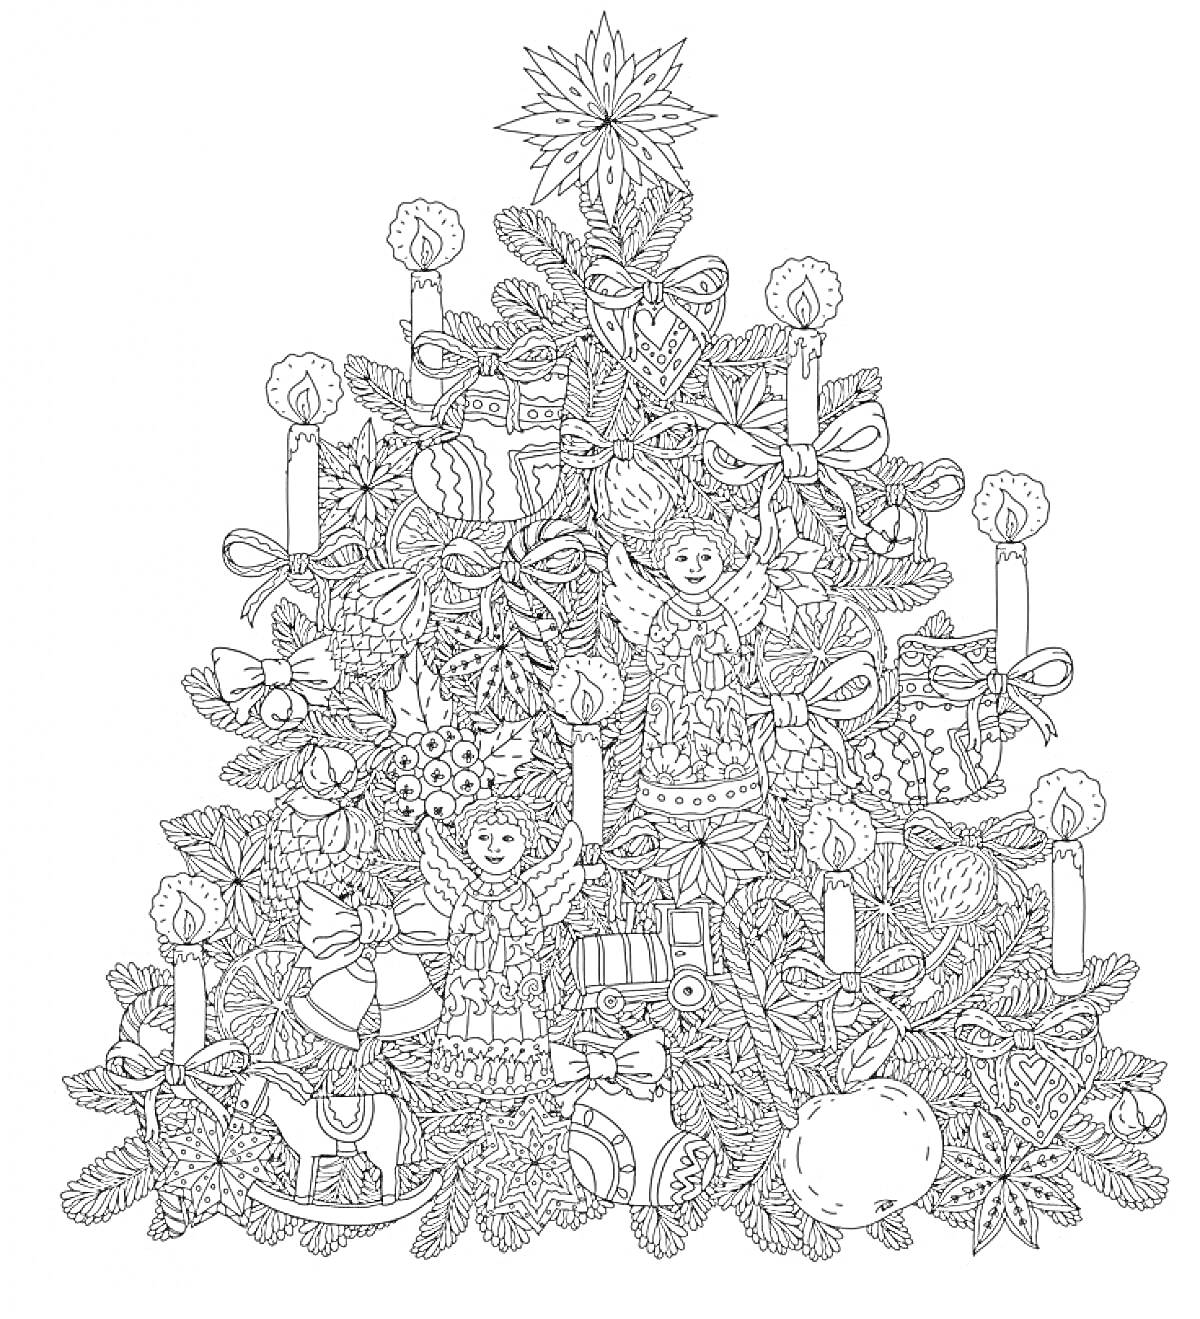 Раскраска Некоторые элементы на новогодней ёлке включают ангелов, свечи, ленты, игрушки, листва, бант, шишки, подарки и звезду.